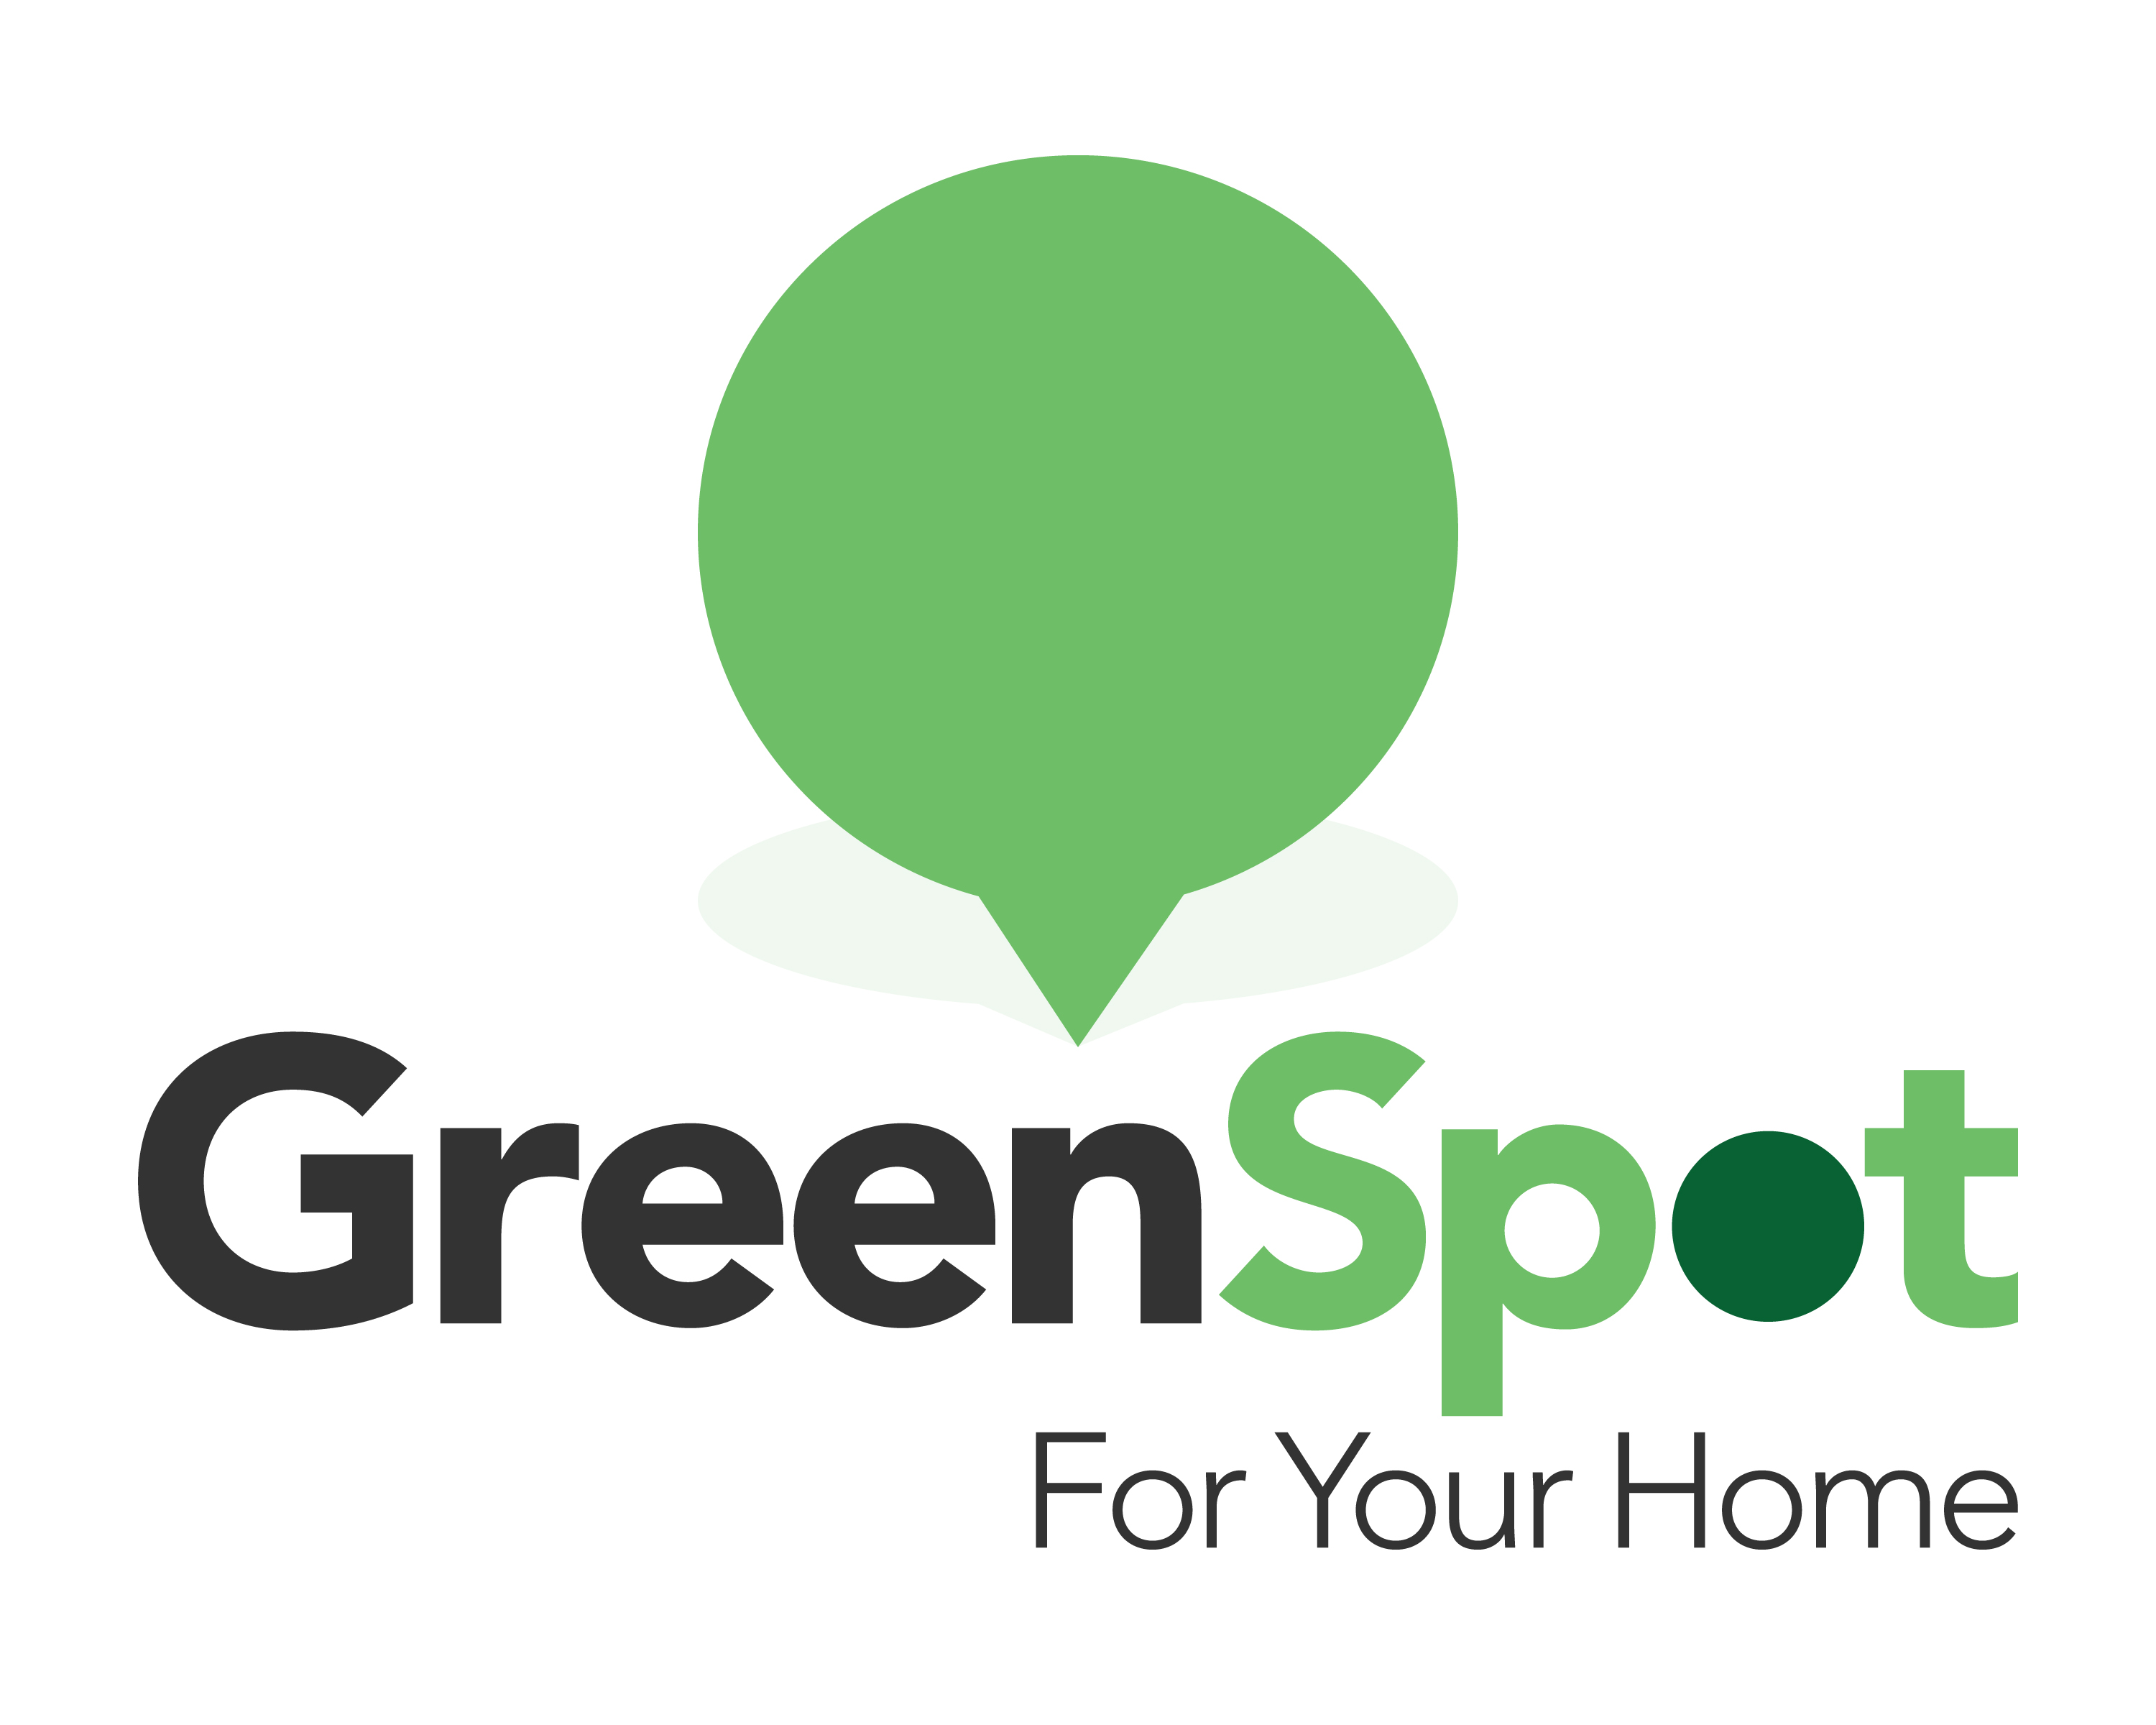 GreenSpot Energy & Sustainability company logo